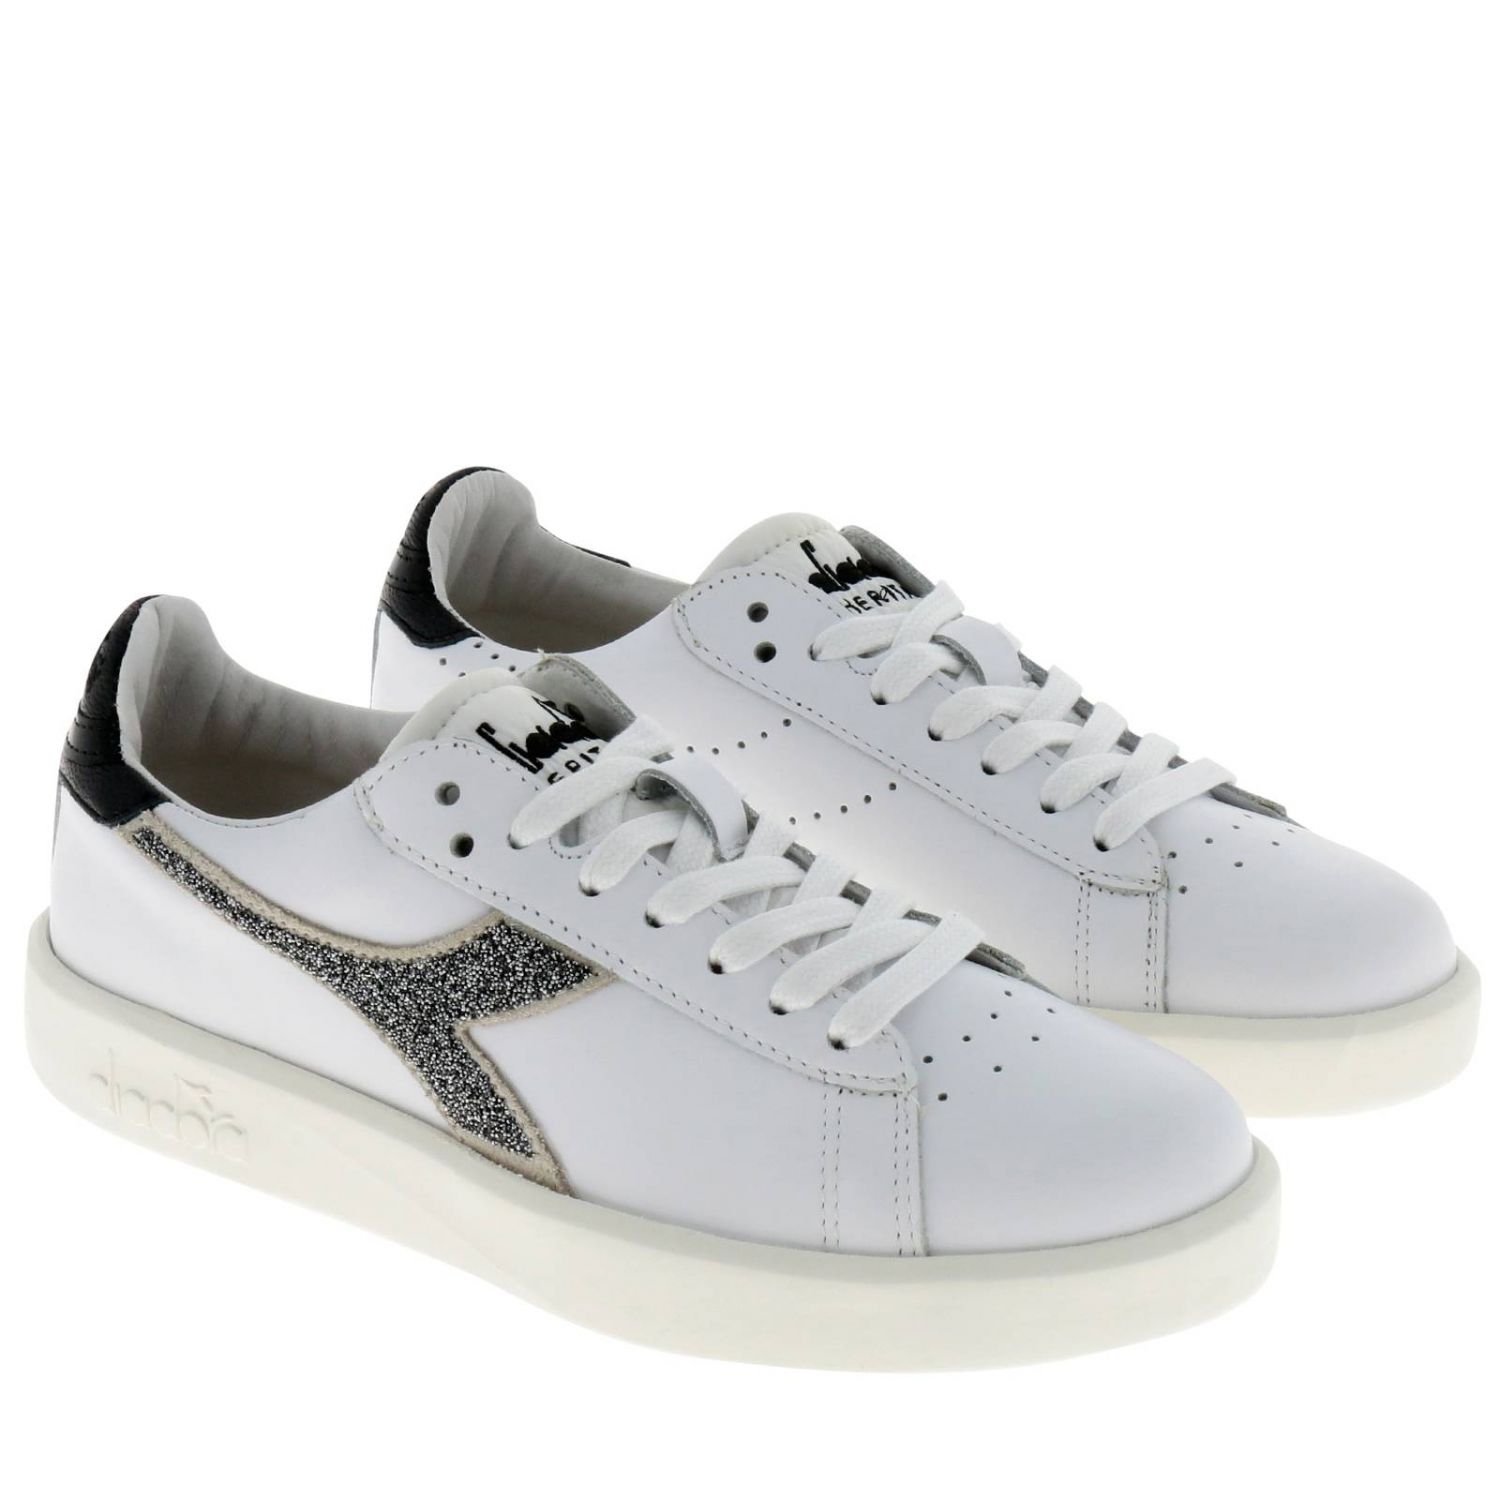 Diadora Heritage Outlet: Shoes women - White | Sneakers Diadora ...